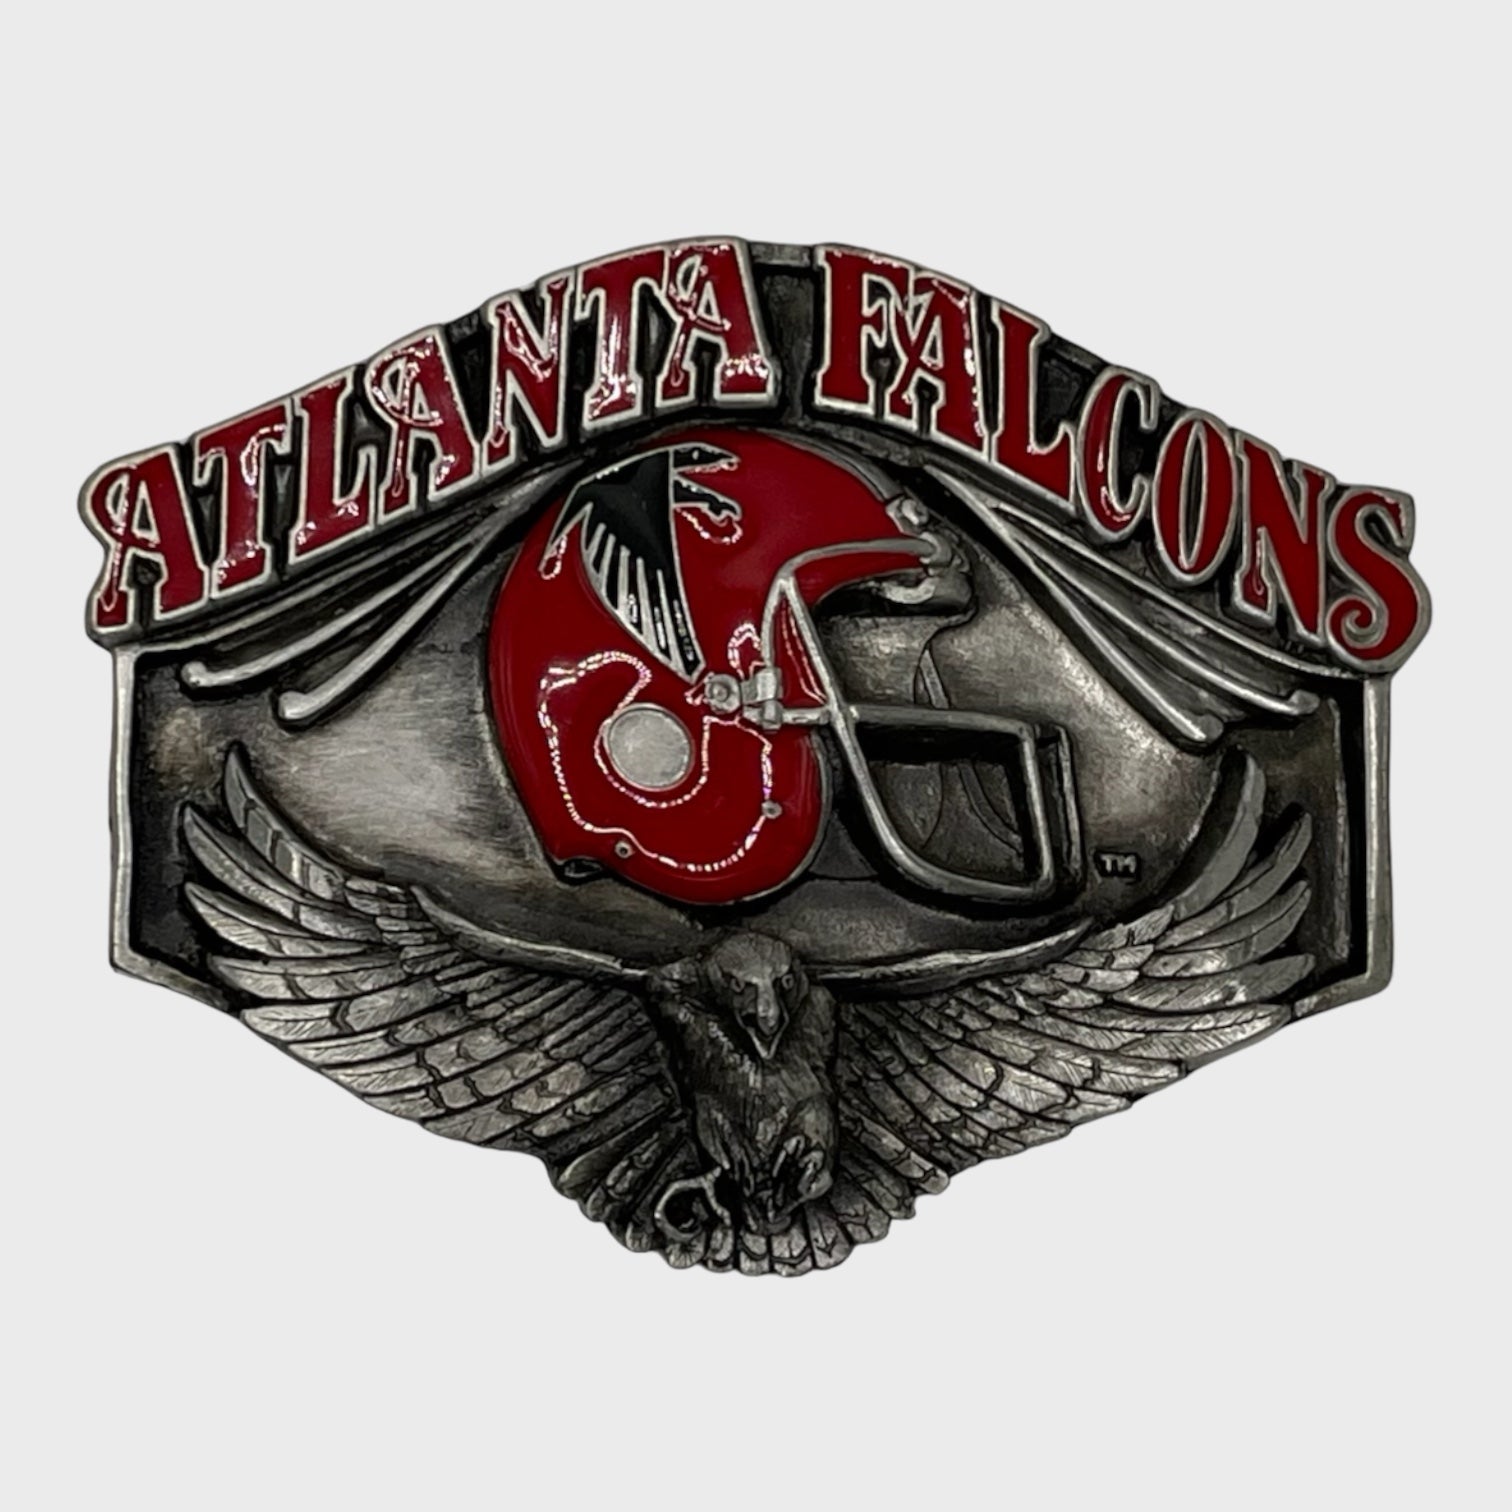 1987 Atlanta Falcons Belt Buckle